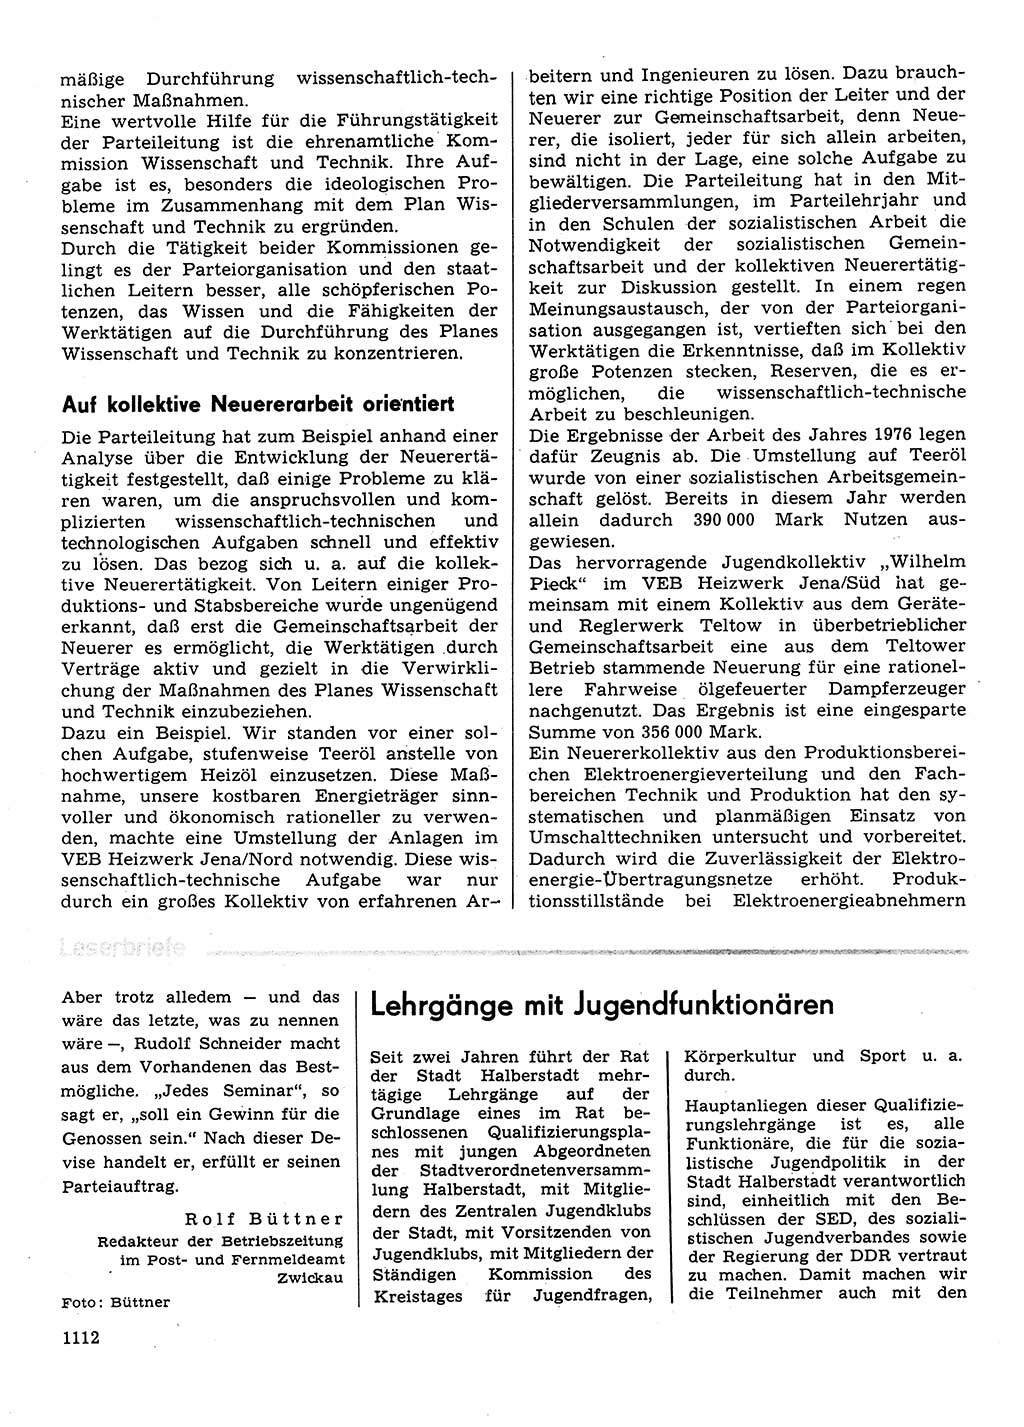 Neuer Weg (NW), Organ des Zentralkomitees (ZK) der SED (Sozialistische Einheitspartei Deutschlands) für Fragen des Parteilebens, 31. Jahrgang [Deutsche Demokratische Republik (DDR)] 1976, Seite 1112 (NW ZK SED DDR 1976, S. 1112)